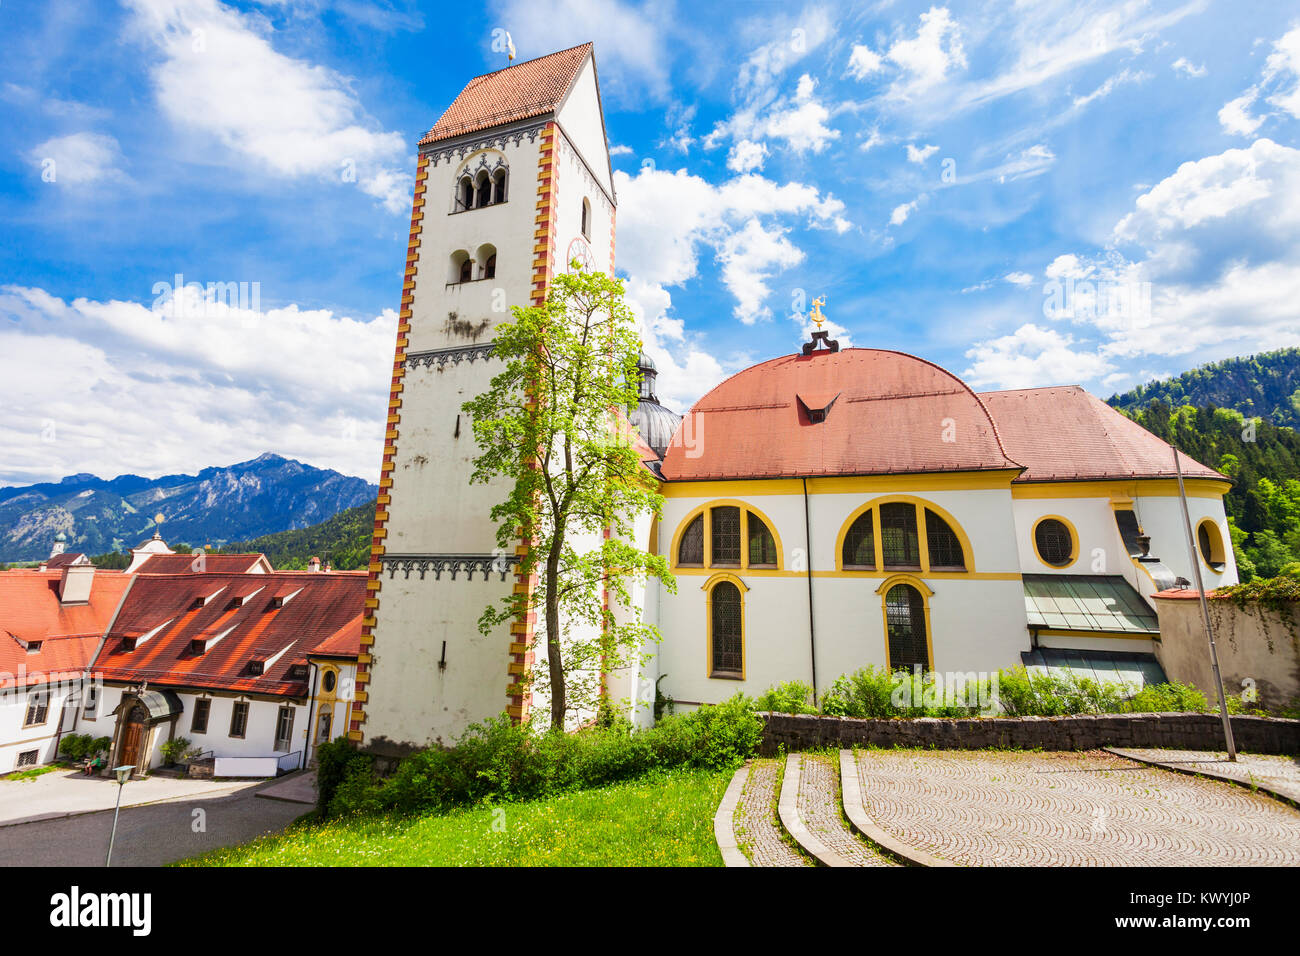 Fussen Abbazia o St. Mang Abbey (Kloster Sankt Mang) è un monastero benedettino di Fussen città della Baviera, Germania Foto Stock